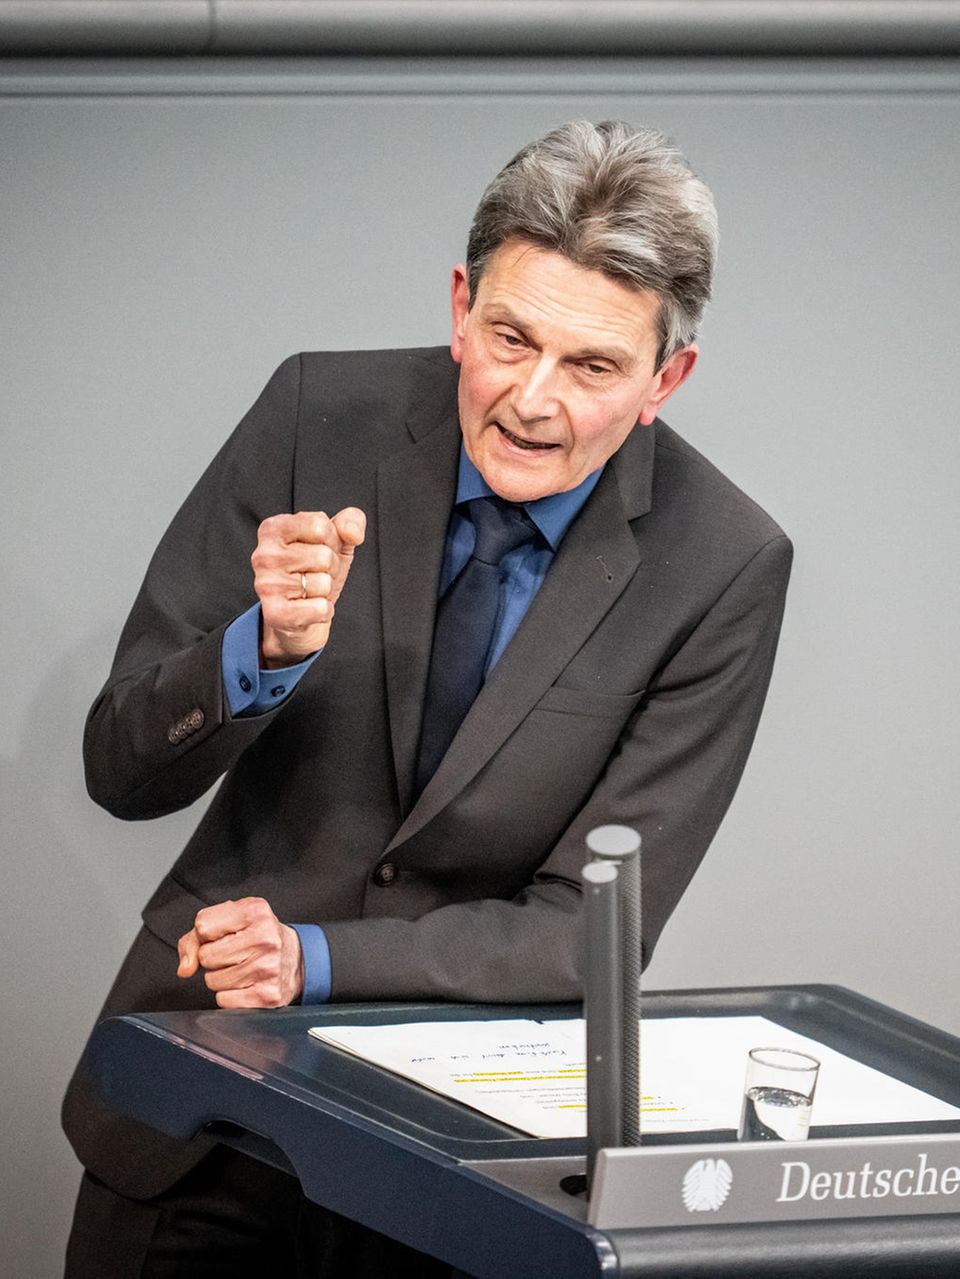 Rolf Mützenich portrait during a speech in the Bundestag